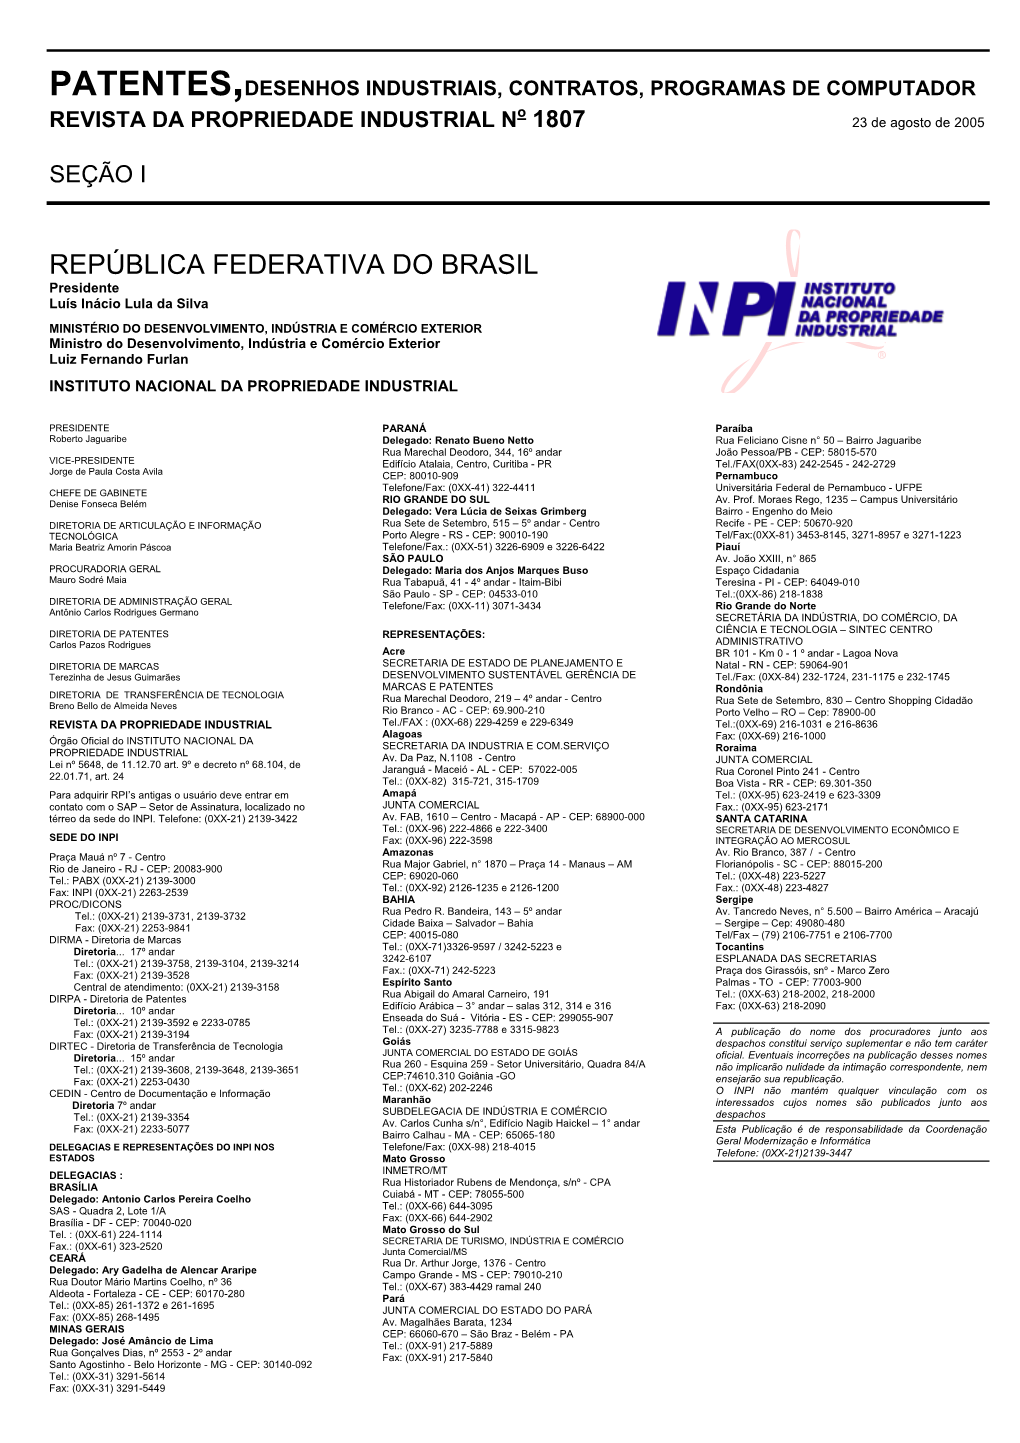 REPÚBLICA FEDERATIVA DO BRASIL Presidente Luís Inácio Lula Da Silva